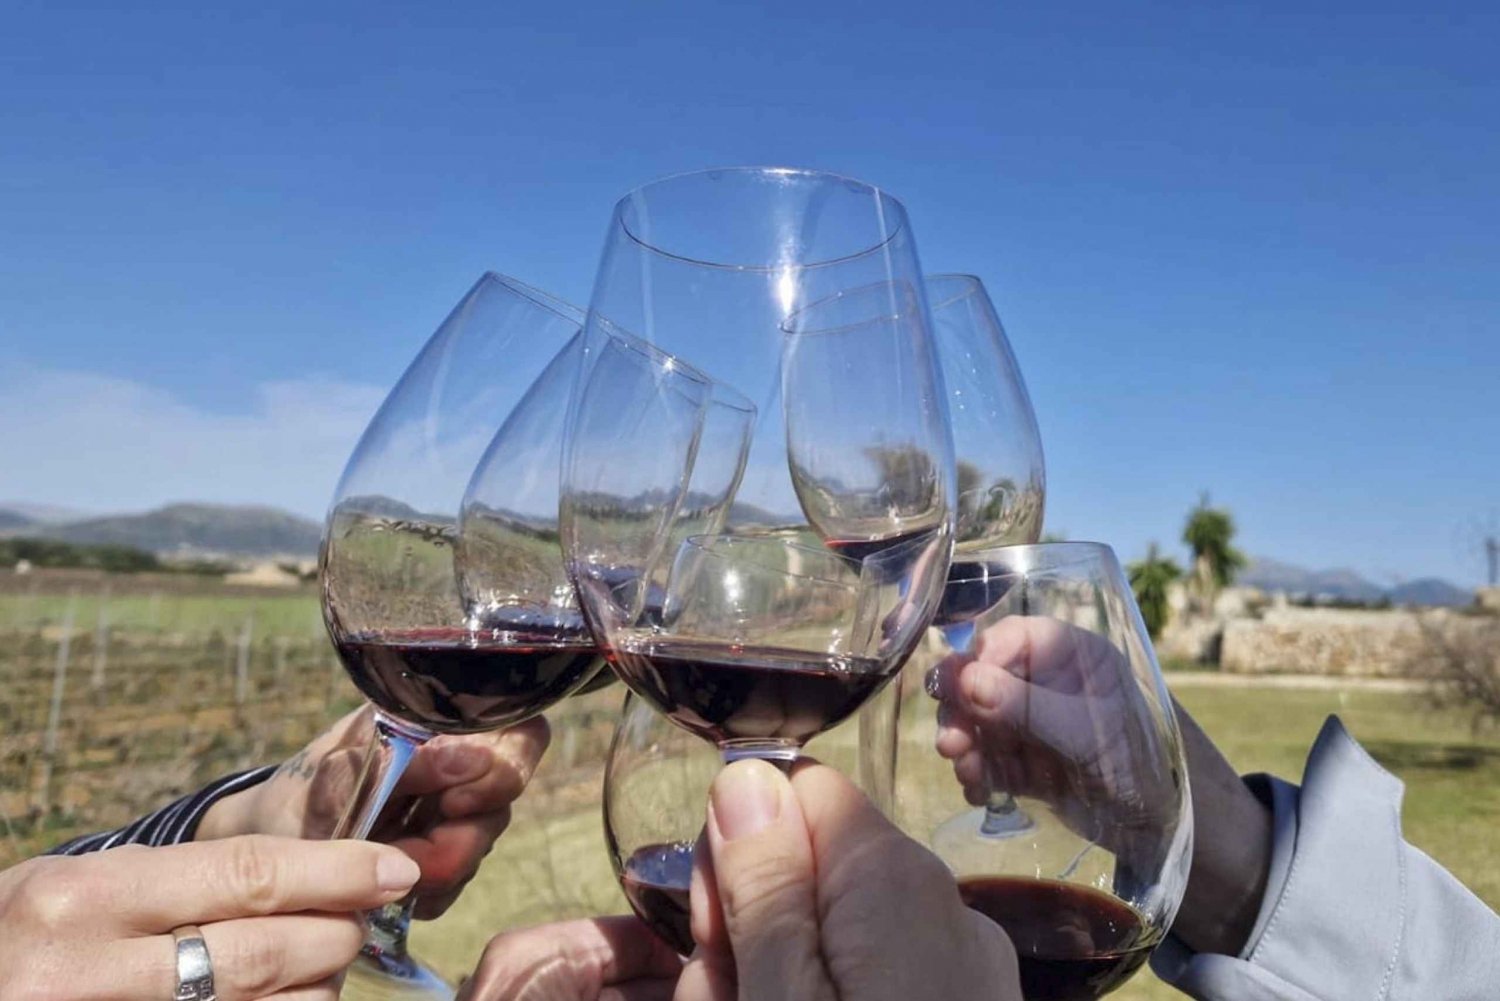 Alcudia vinkælder-tur: Besøg på vingård, smagning af 5 vine